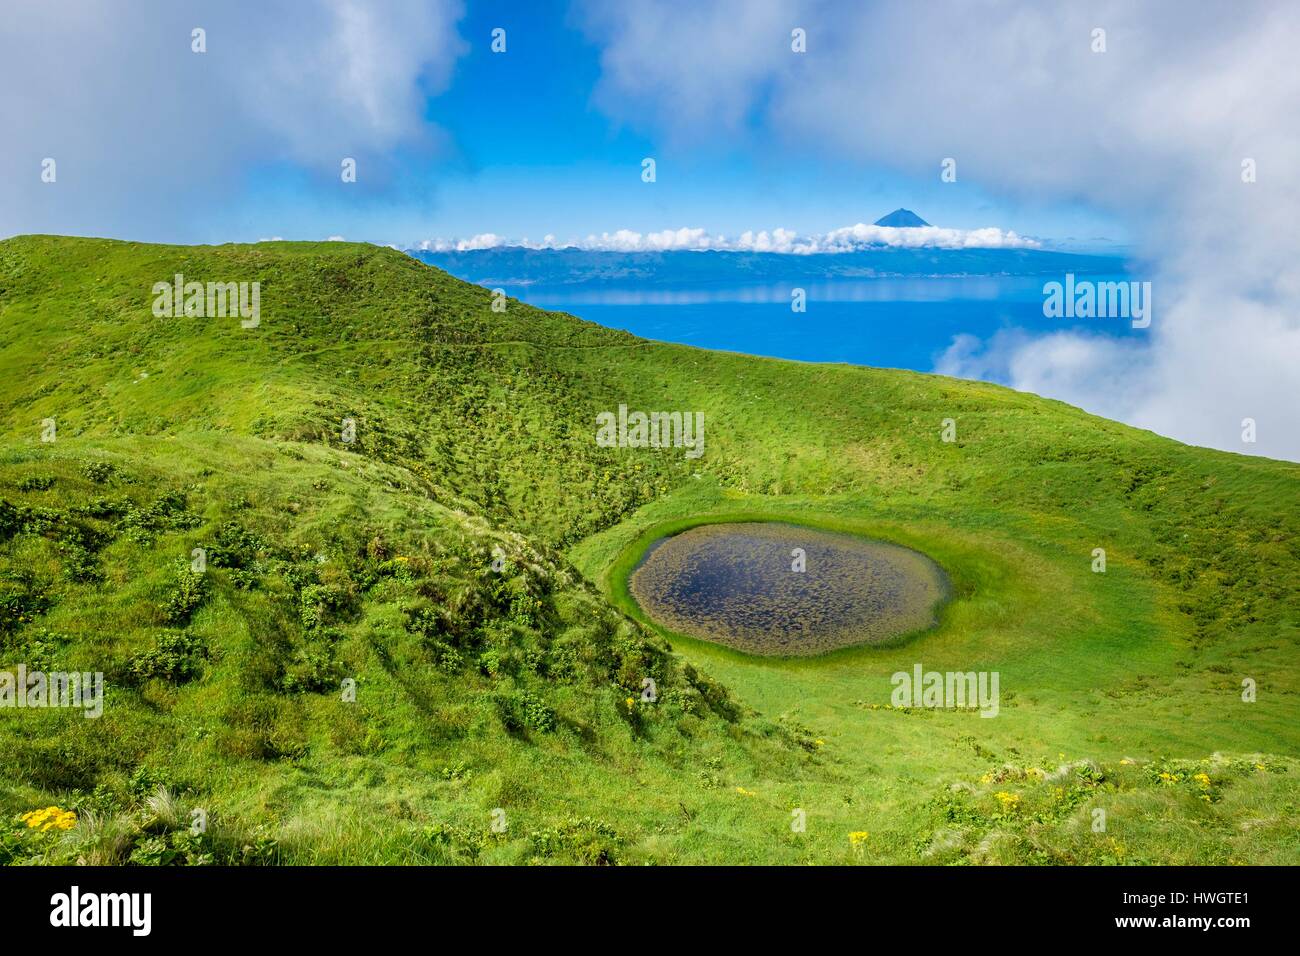 Il Portogallo, arcipelago delle Azzorre, Sao Jorge island, Riserva della Biosfera dall'UNESCO, la centrale di costone vulcanico è un susseguirsi di vecchi coni e crateri occupati da piccoli laghi Foto Stock